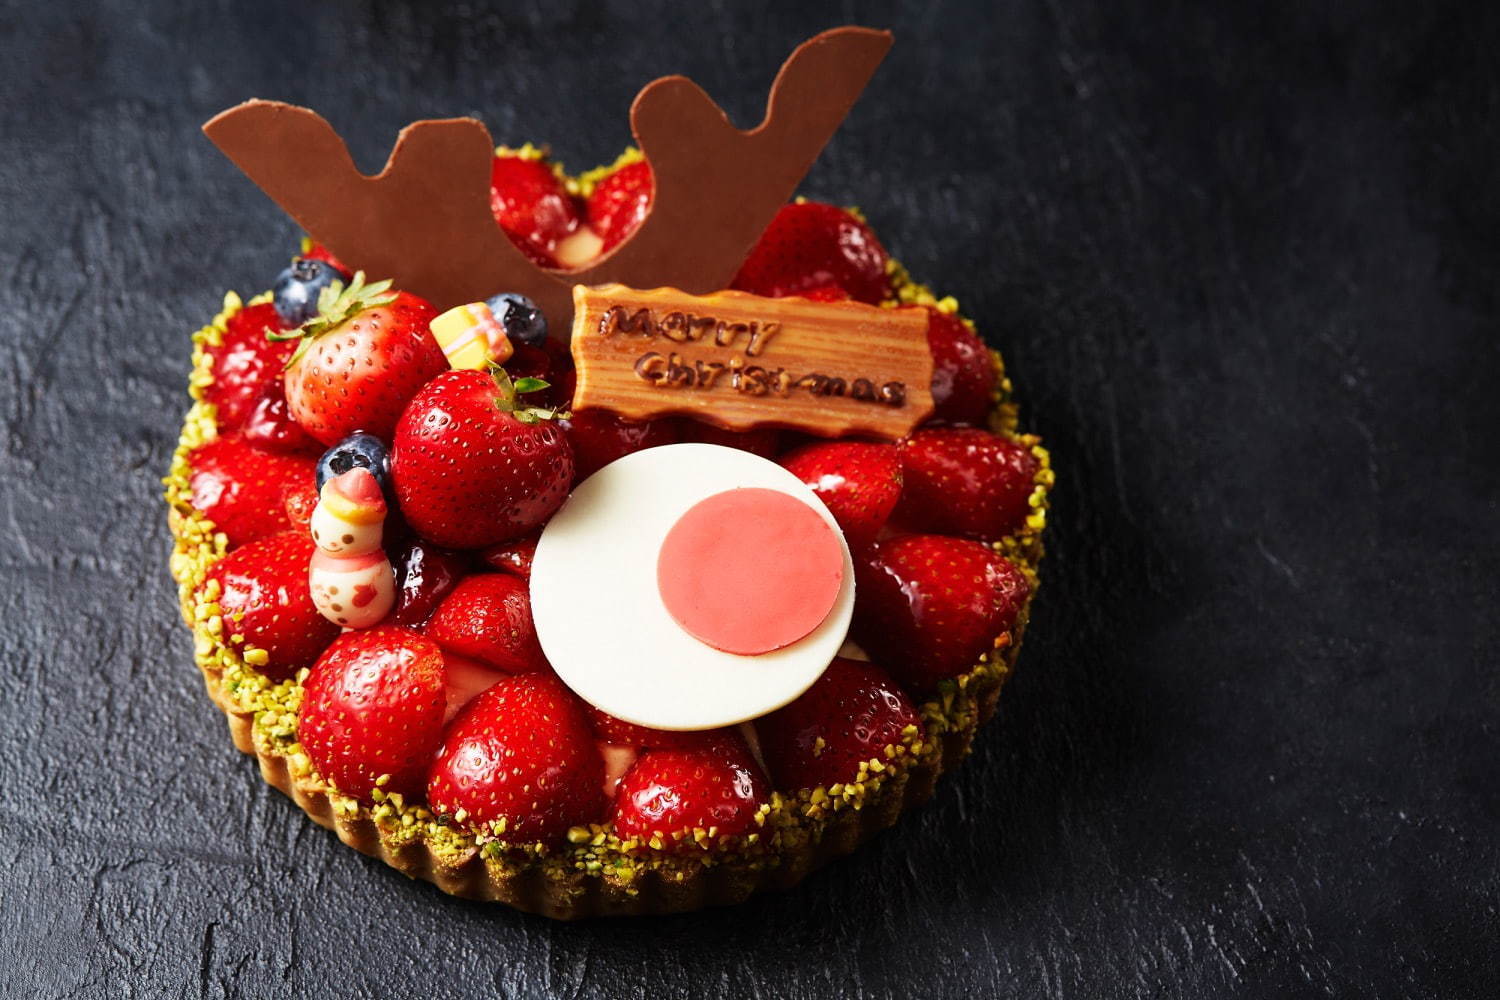 インターコンチネンタルホテル大阪のクリスマスケーキ2020、ポップな“サンタクロース”苺ショートなど｜写真4